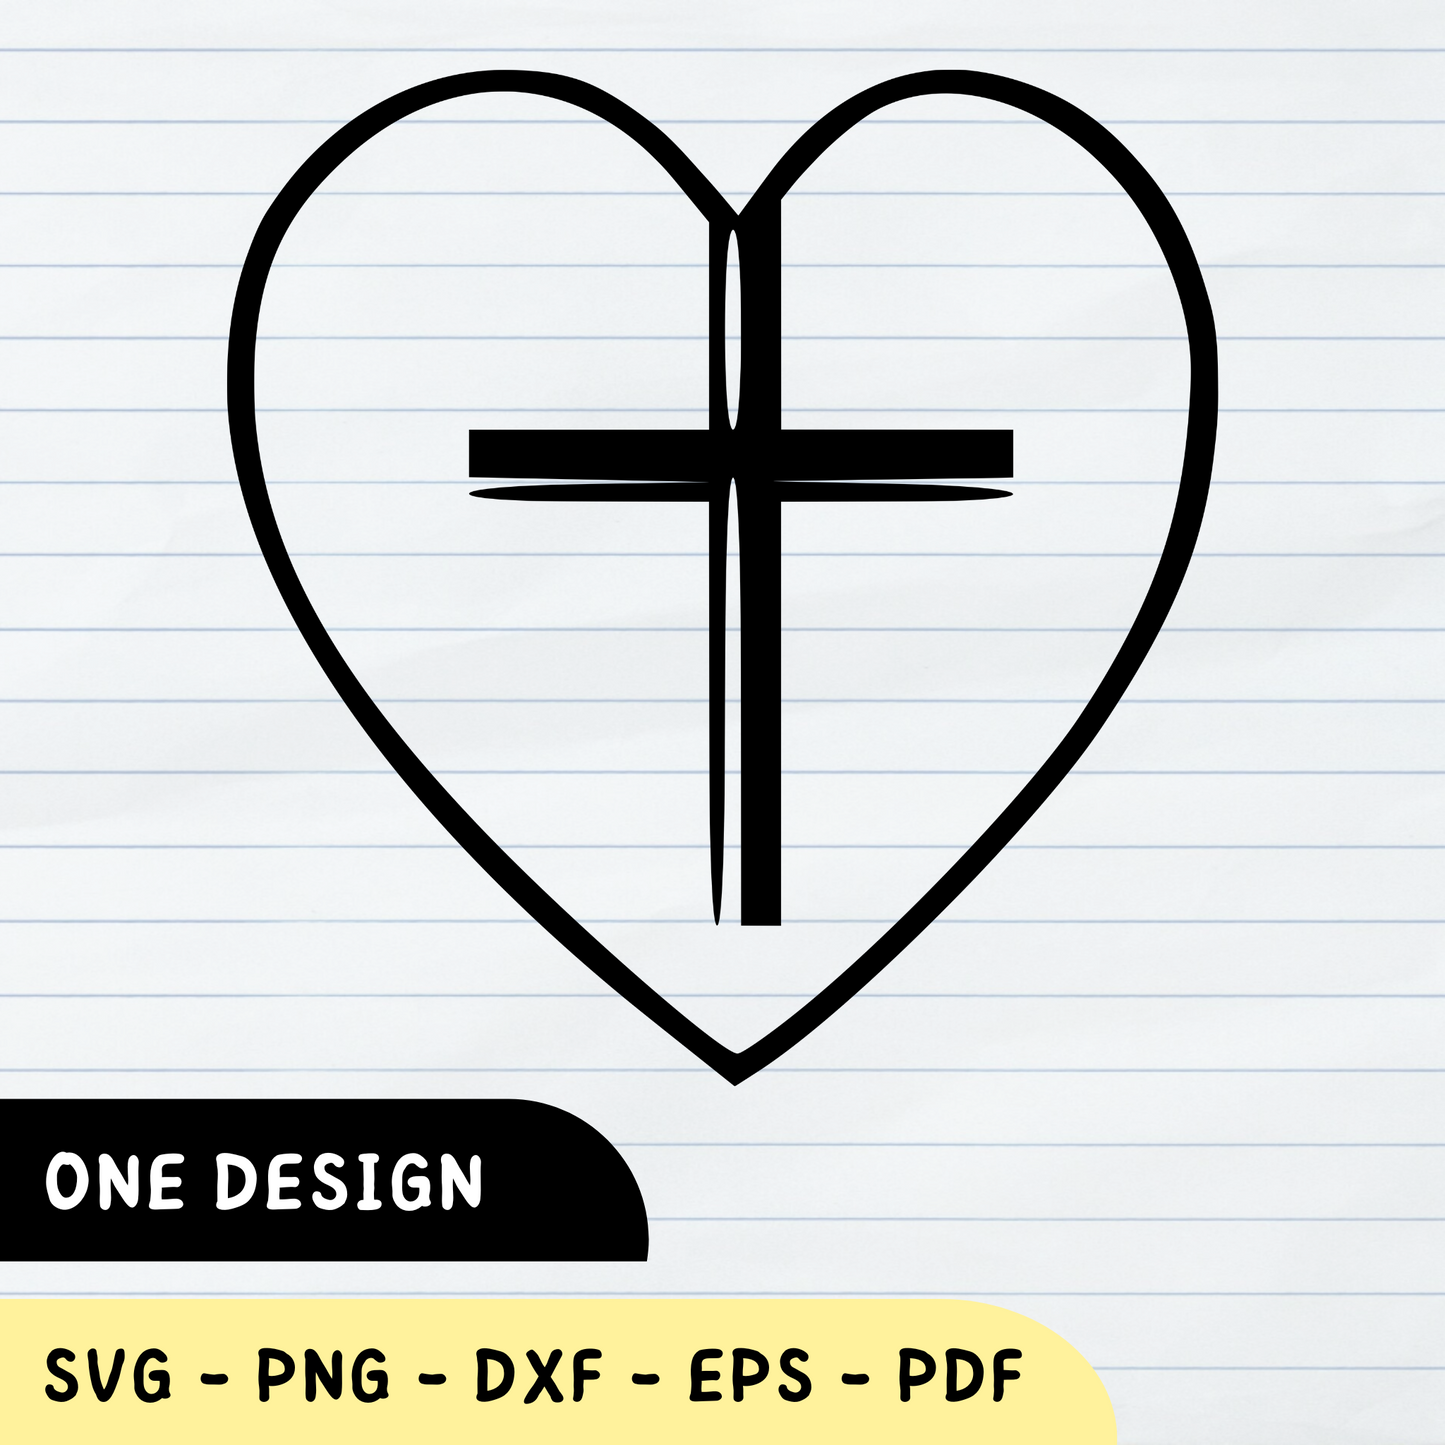 Christian Cross SVG, Christian Cross, Christian Cross Lover, Christian Cross Vector